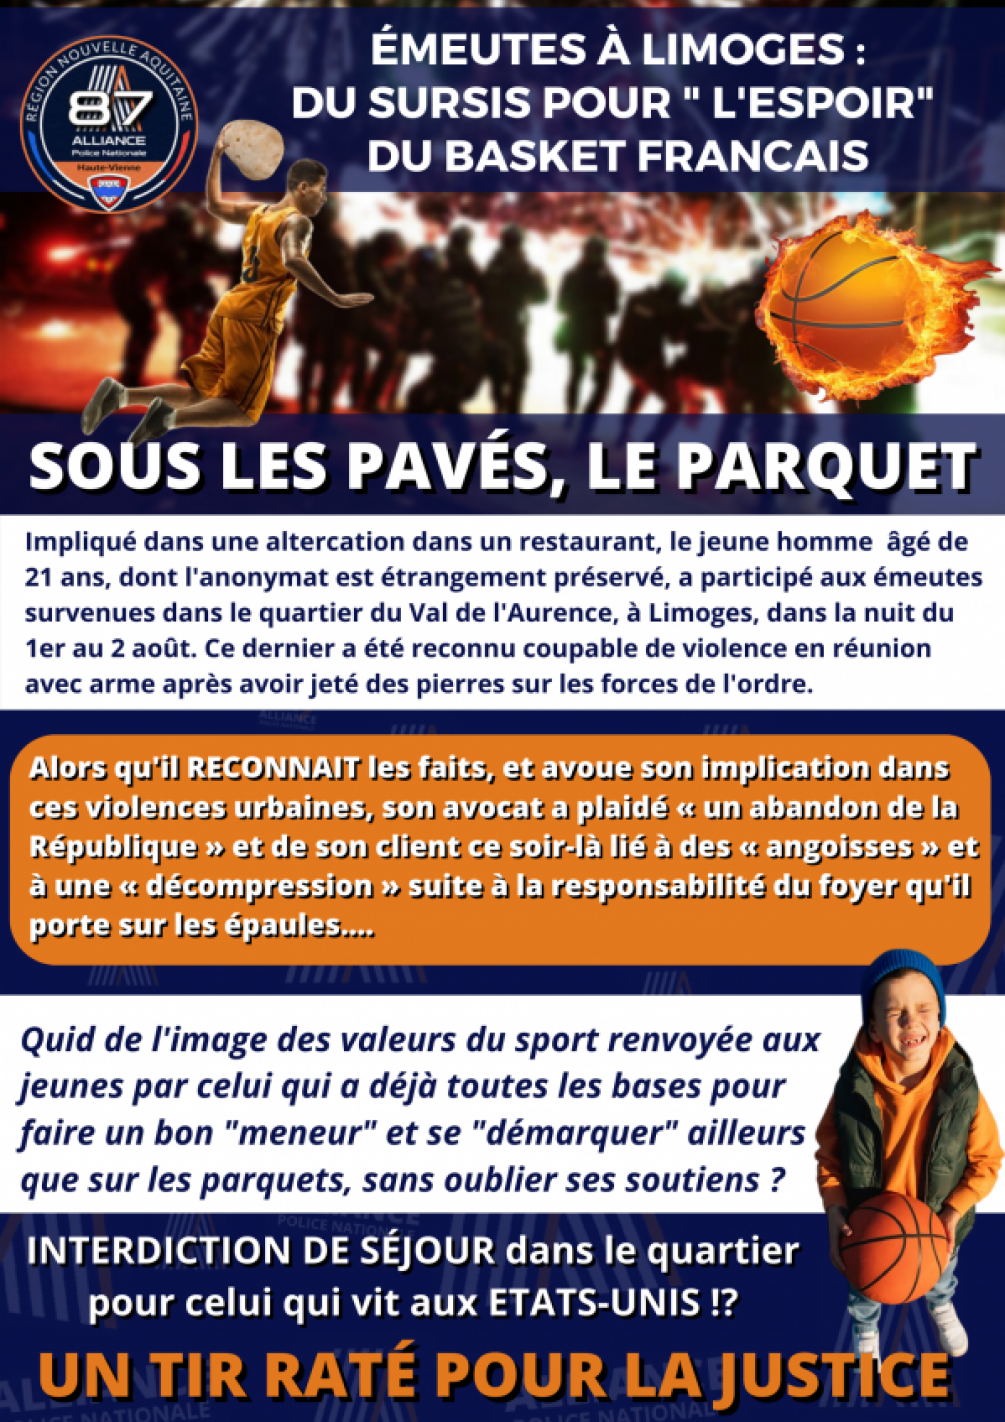 Émeutes à Limoges du sursis pour l'espoir du basket français